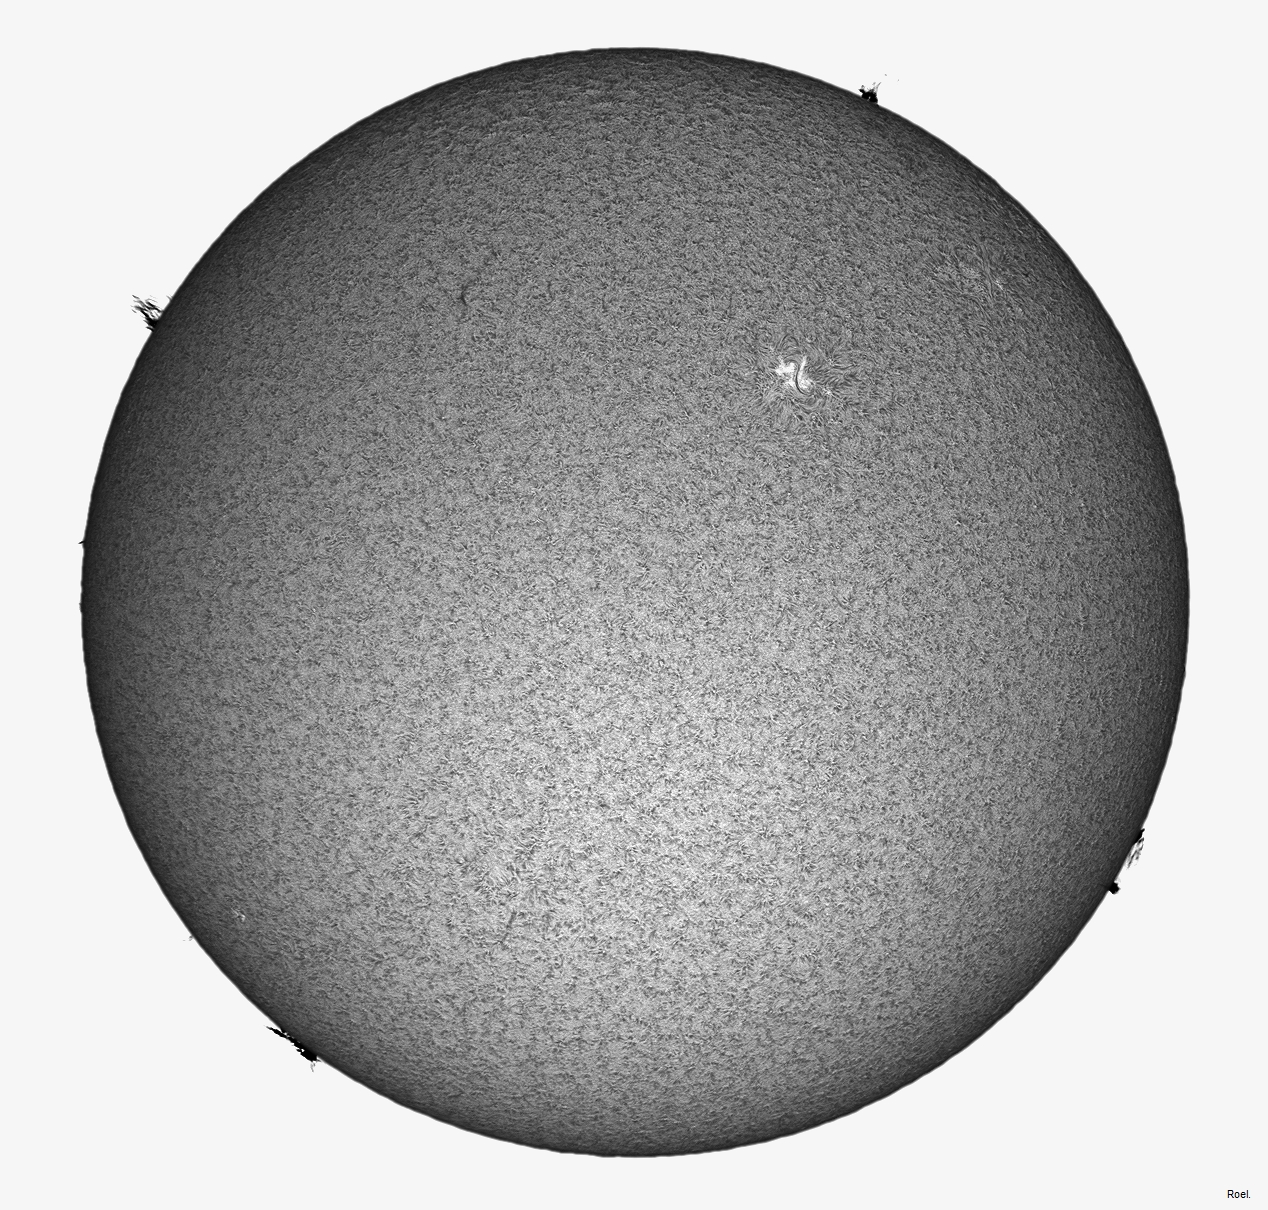 Sol del 11 de agosto del 2020-Solarmax 90-DS-BF30-1pos-neg.jpg